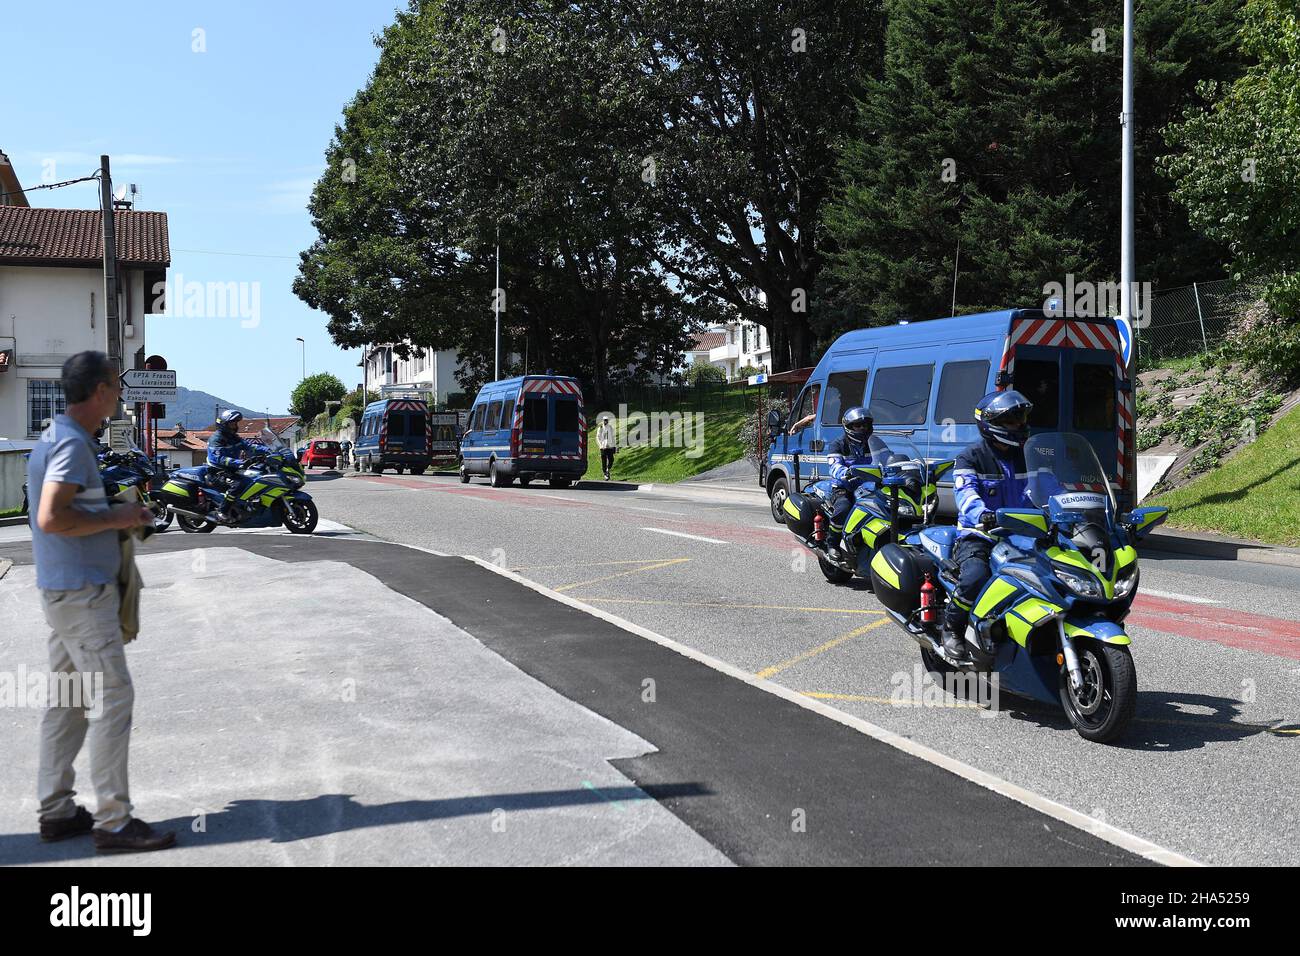 Motos et camionnettes de police françaises pendant le sommet de G7 (Credit image: © Julen Pascual Gonzalez) Banque D'Images